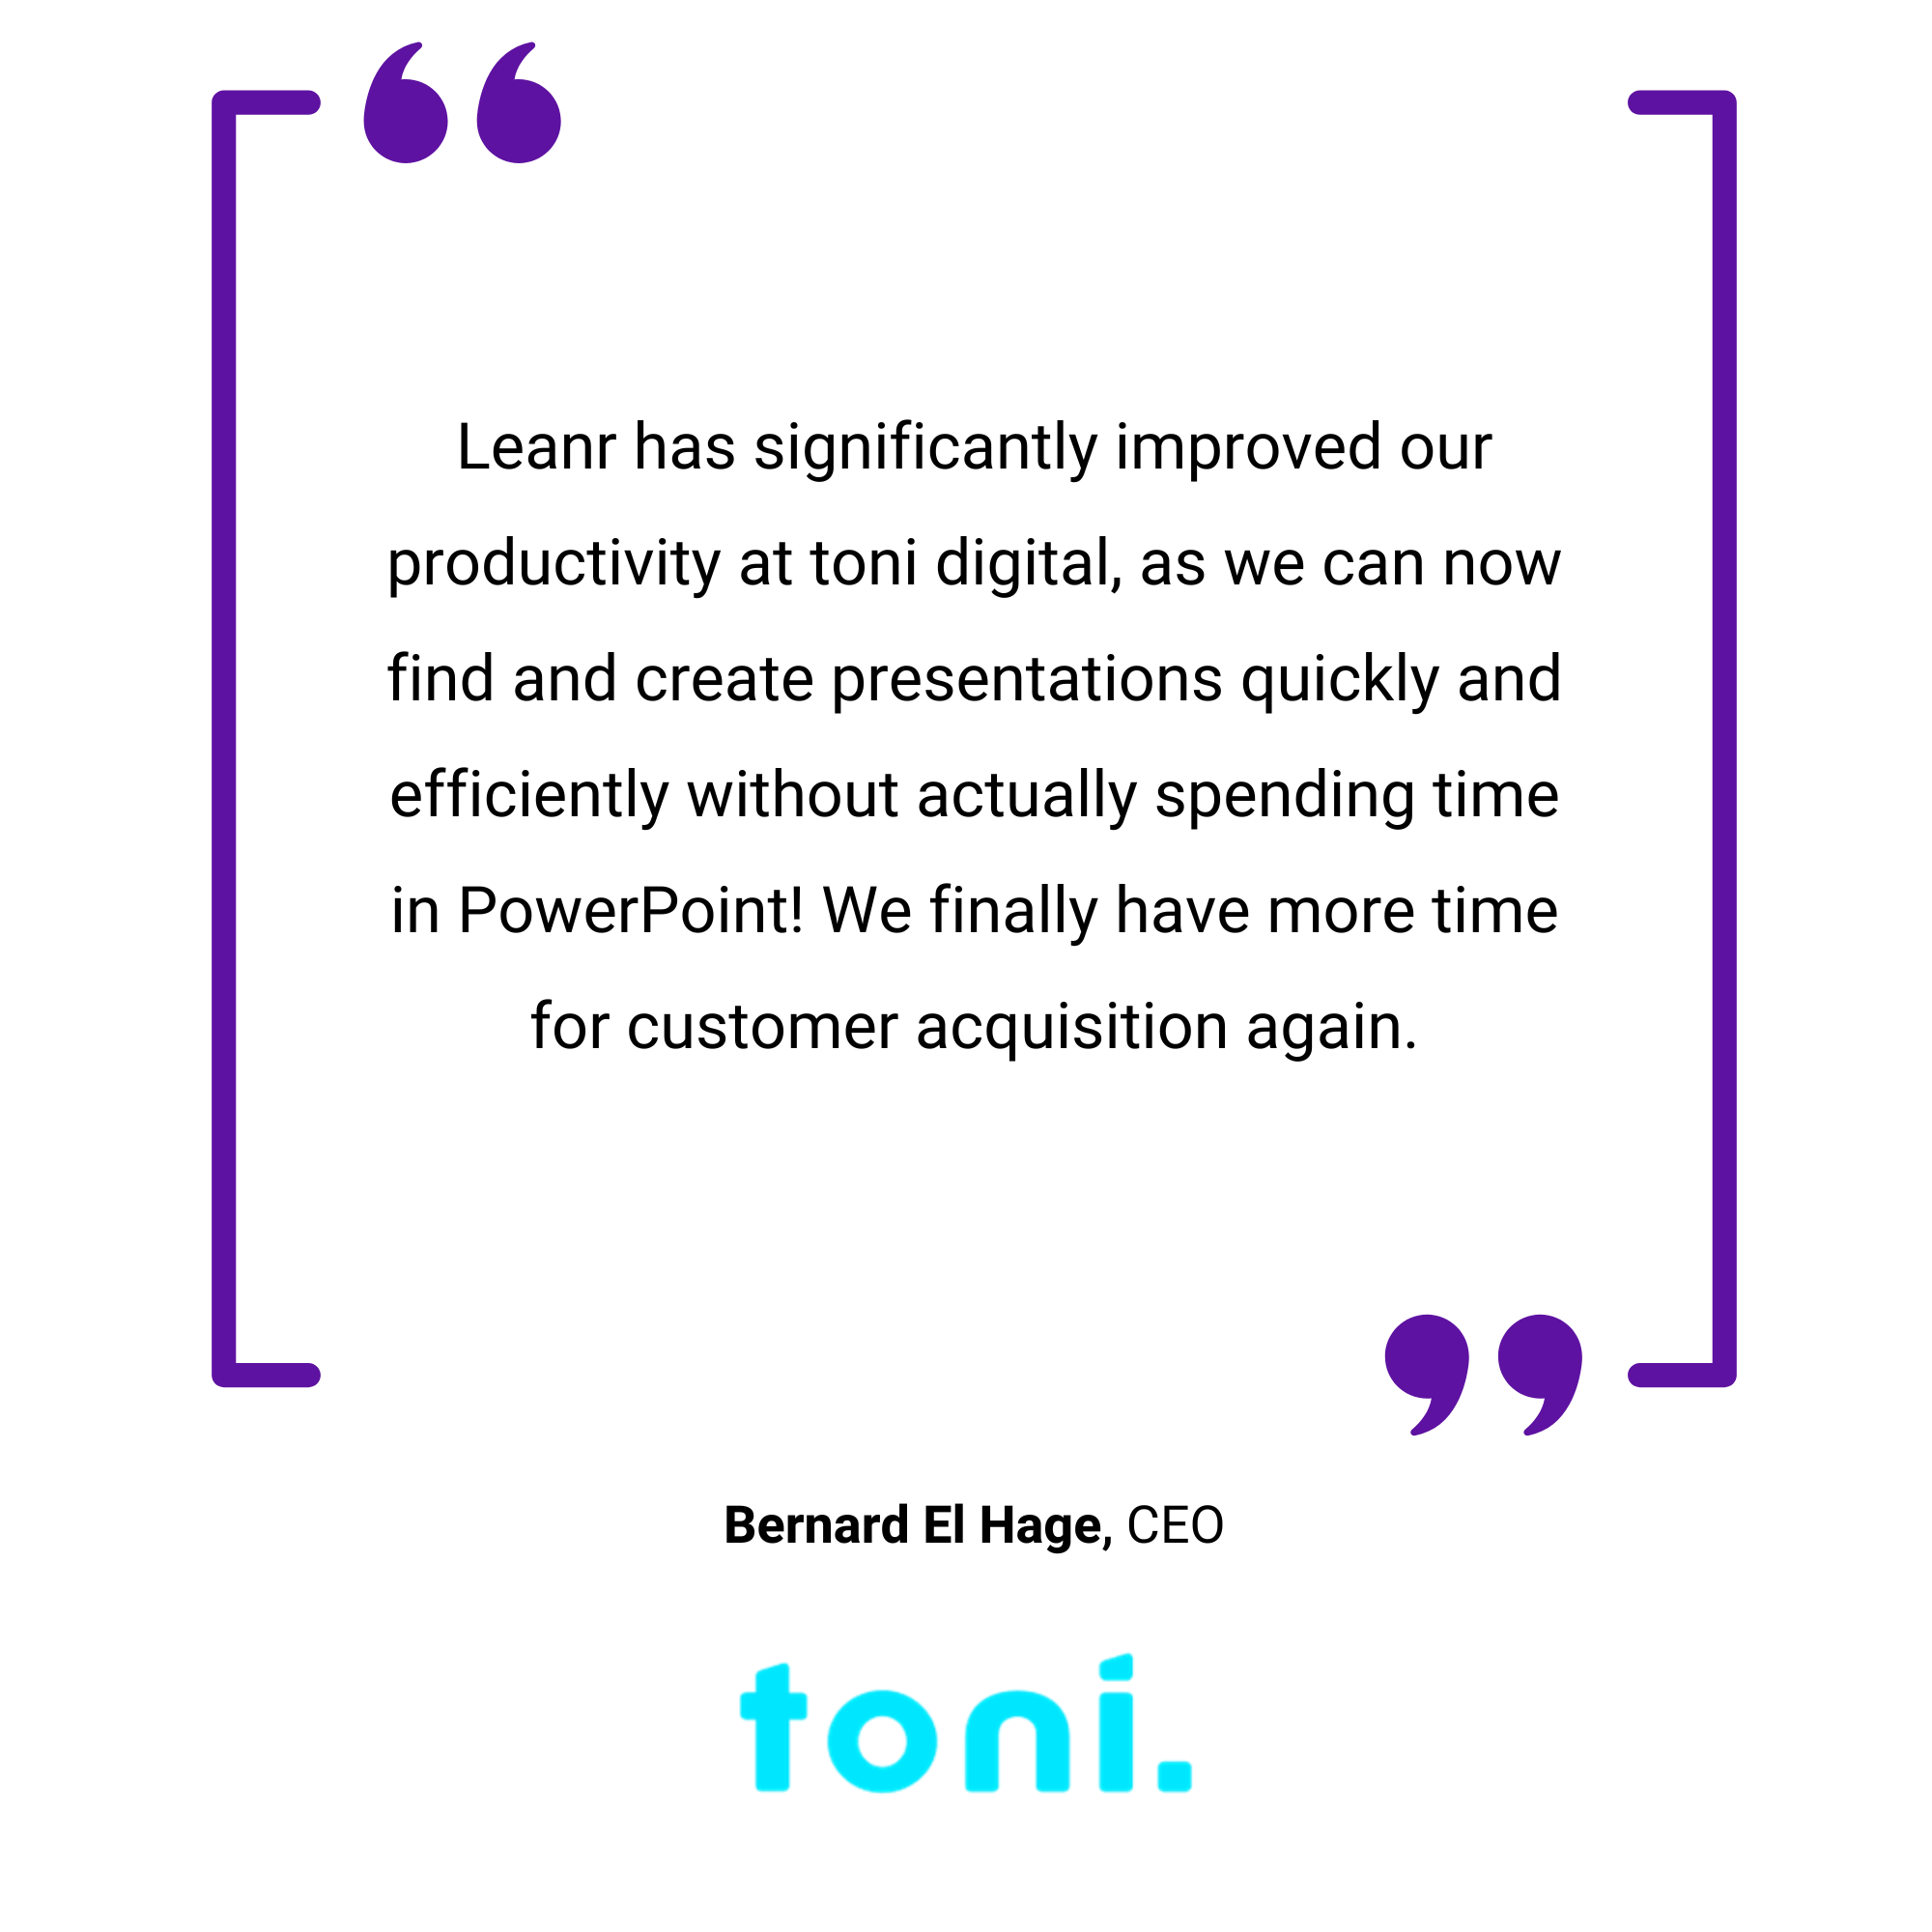 Ein violett umrandetes Bild mit einem Zitat über digitale Produktivität in Powerpoint von Bernard El Hage bei Toni, vor einem hellblauen Hintergrund.